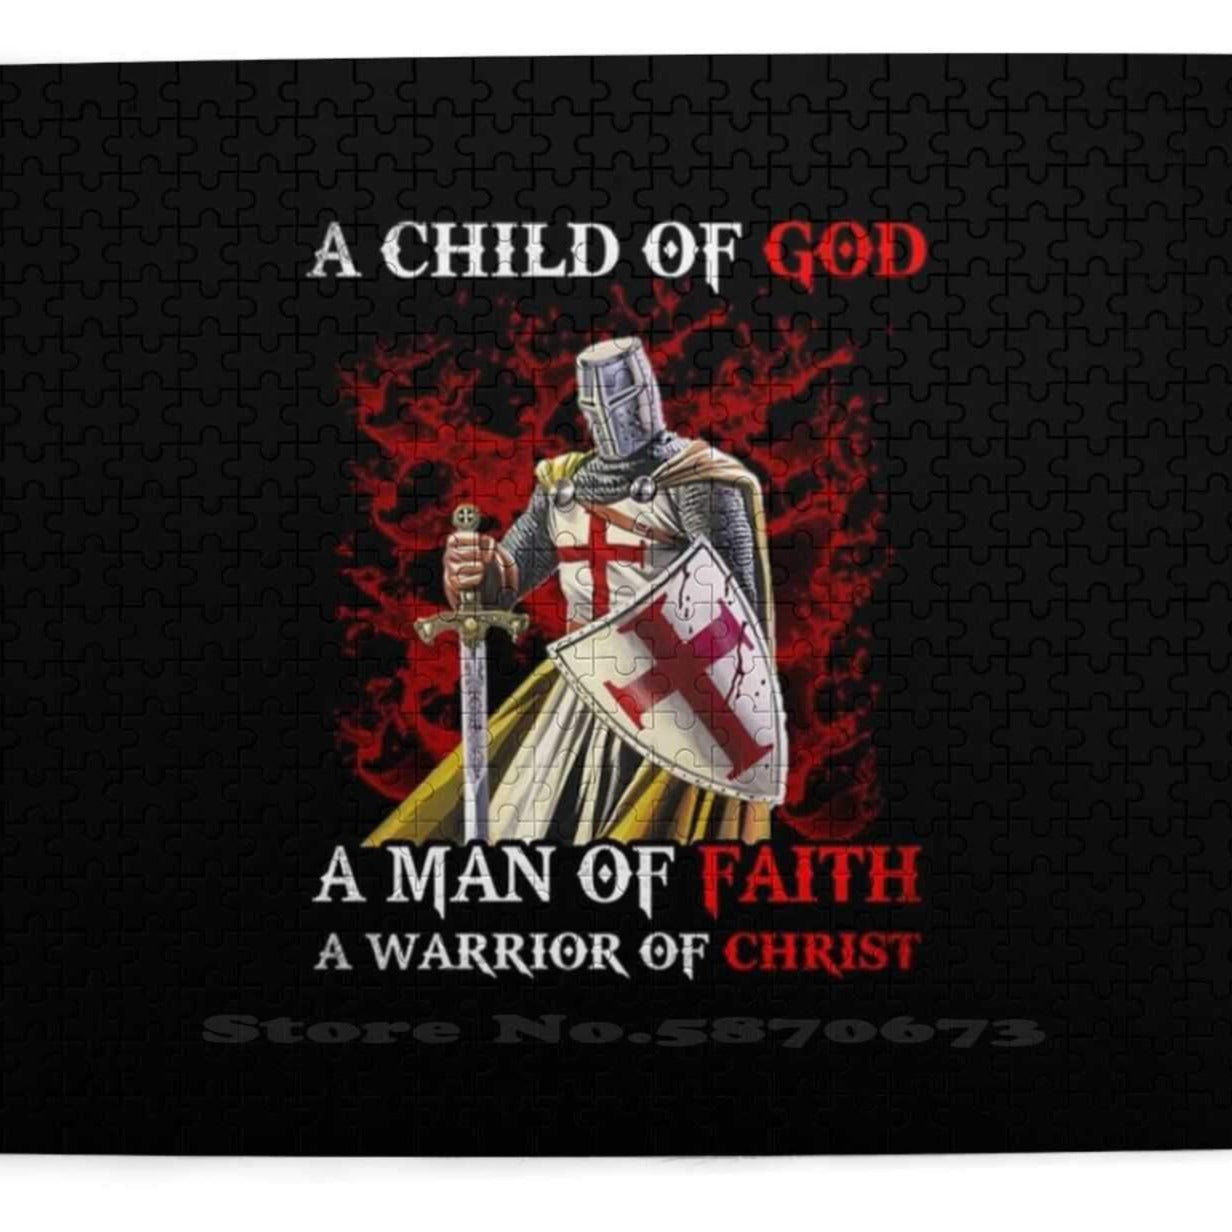 A Child Of God A Man Of Faith A Warrior Of Christ Templar Knight